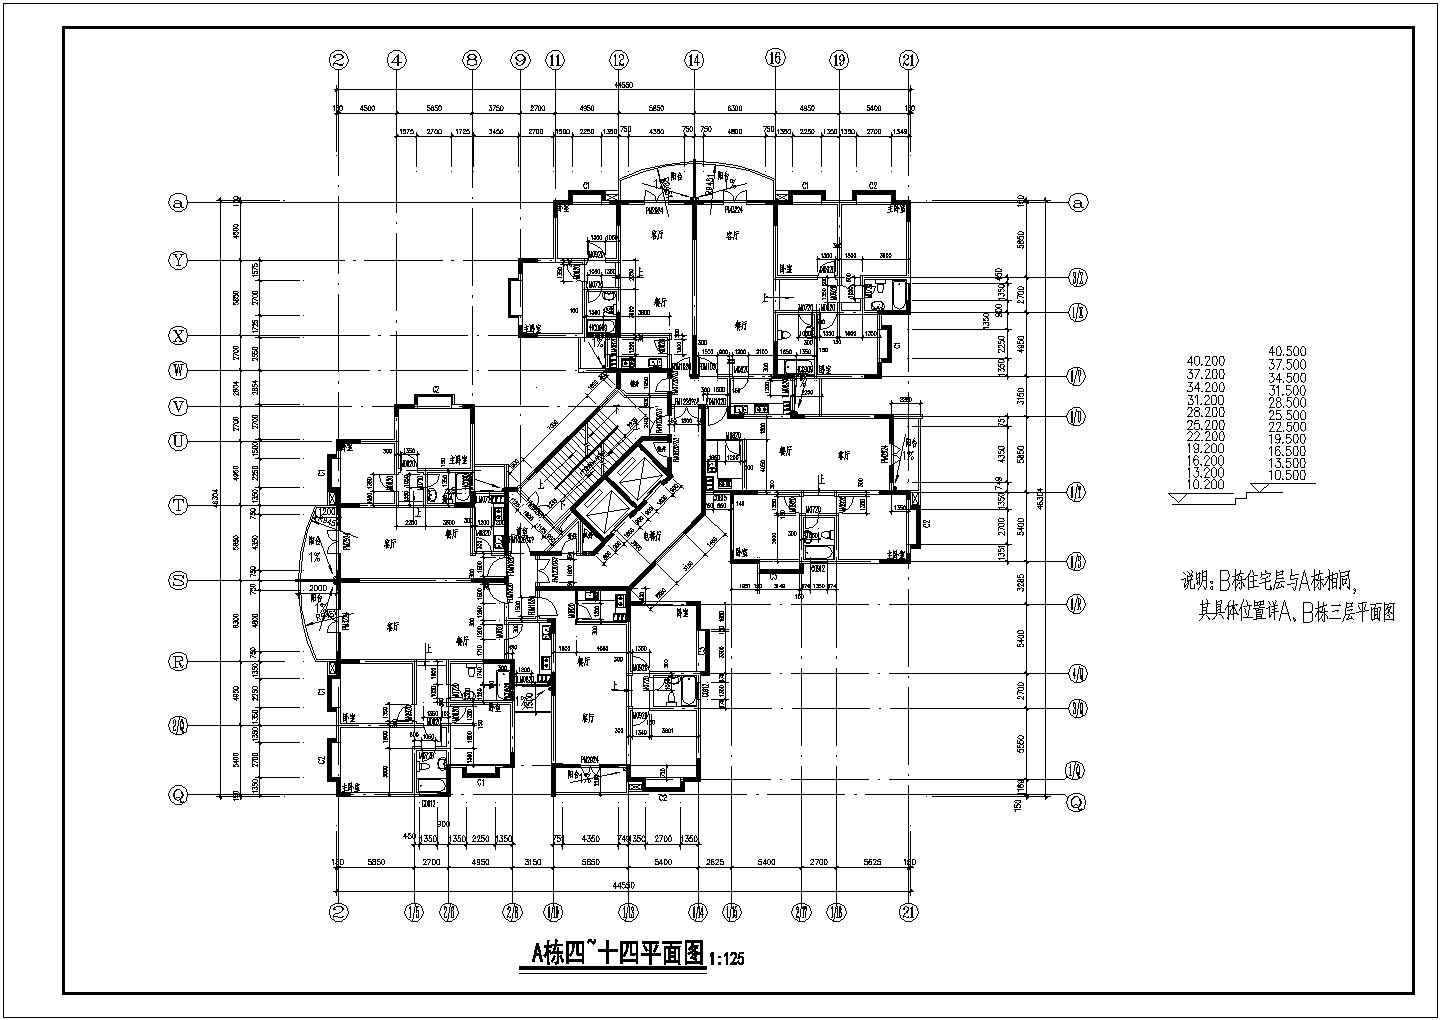 高层公寓式住宅楼建筑全套施工cad图纸(含跃层平面图)